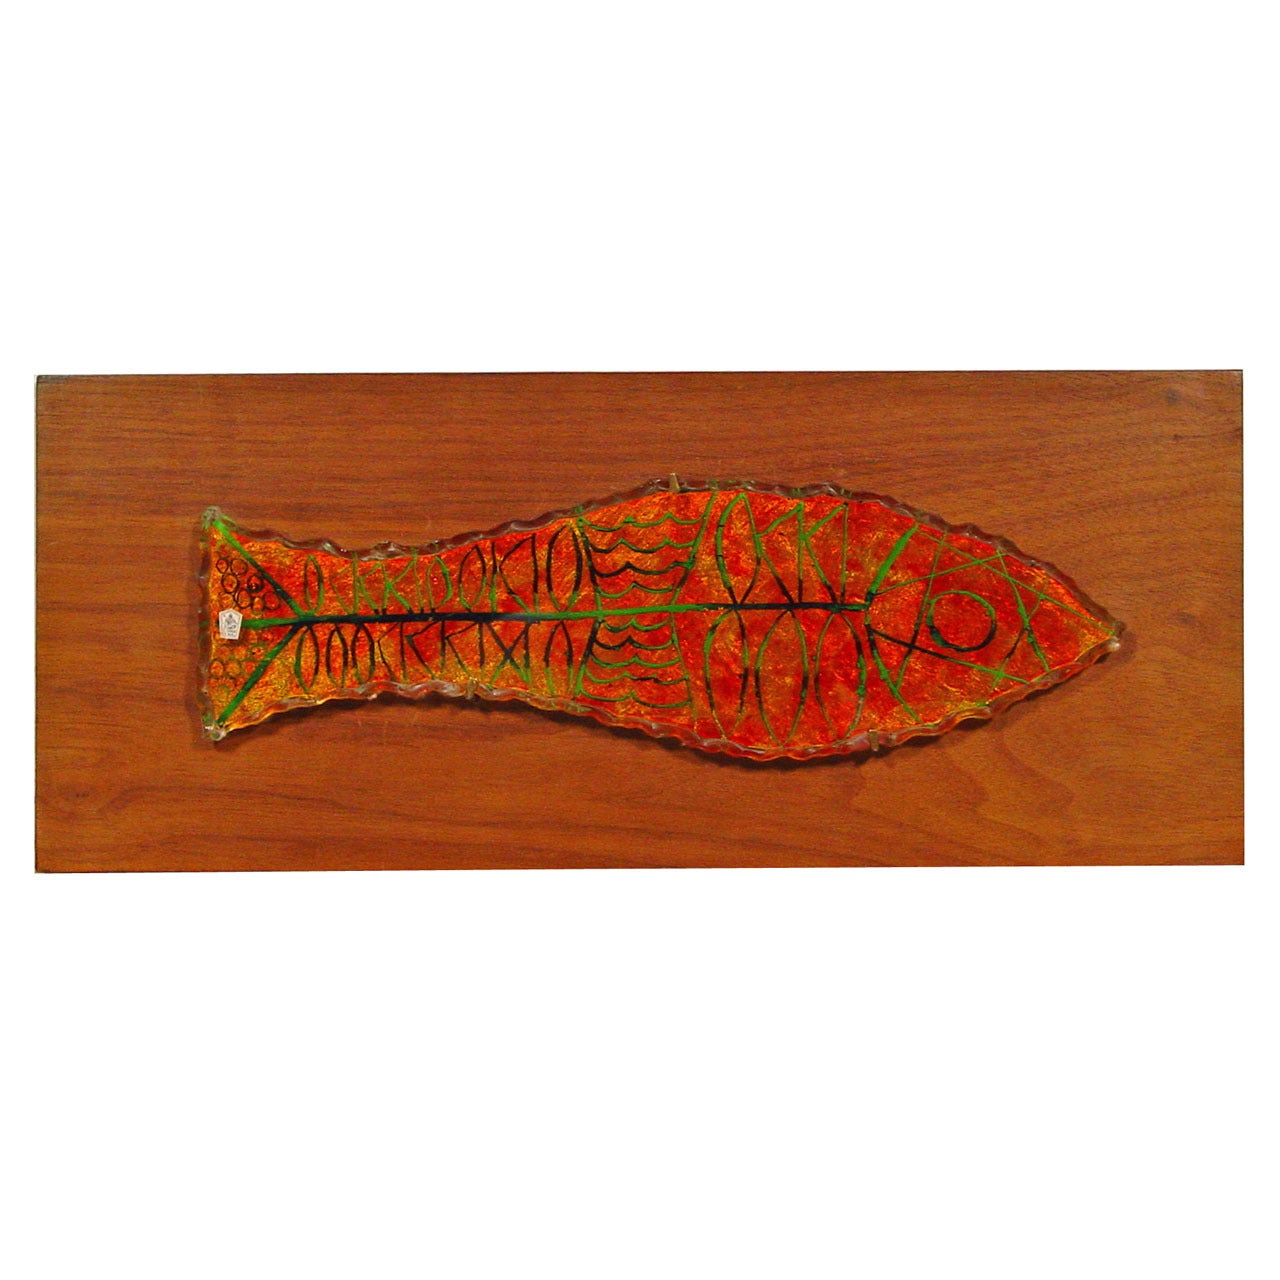 Wandteppich ""Fish" von Erwin Walter Burger